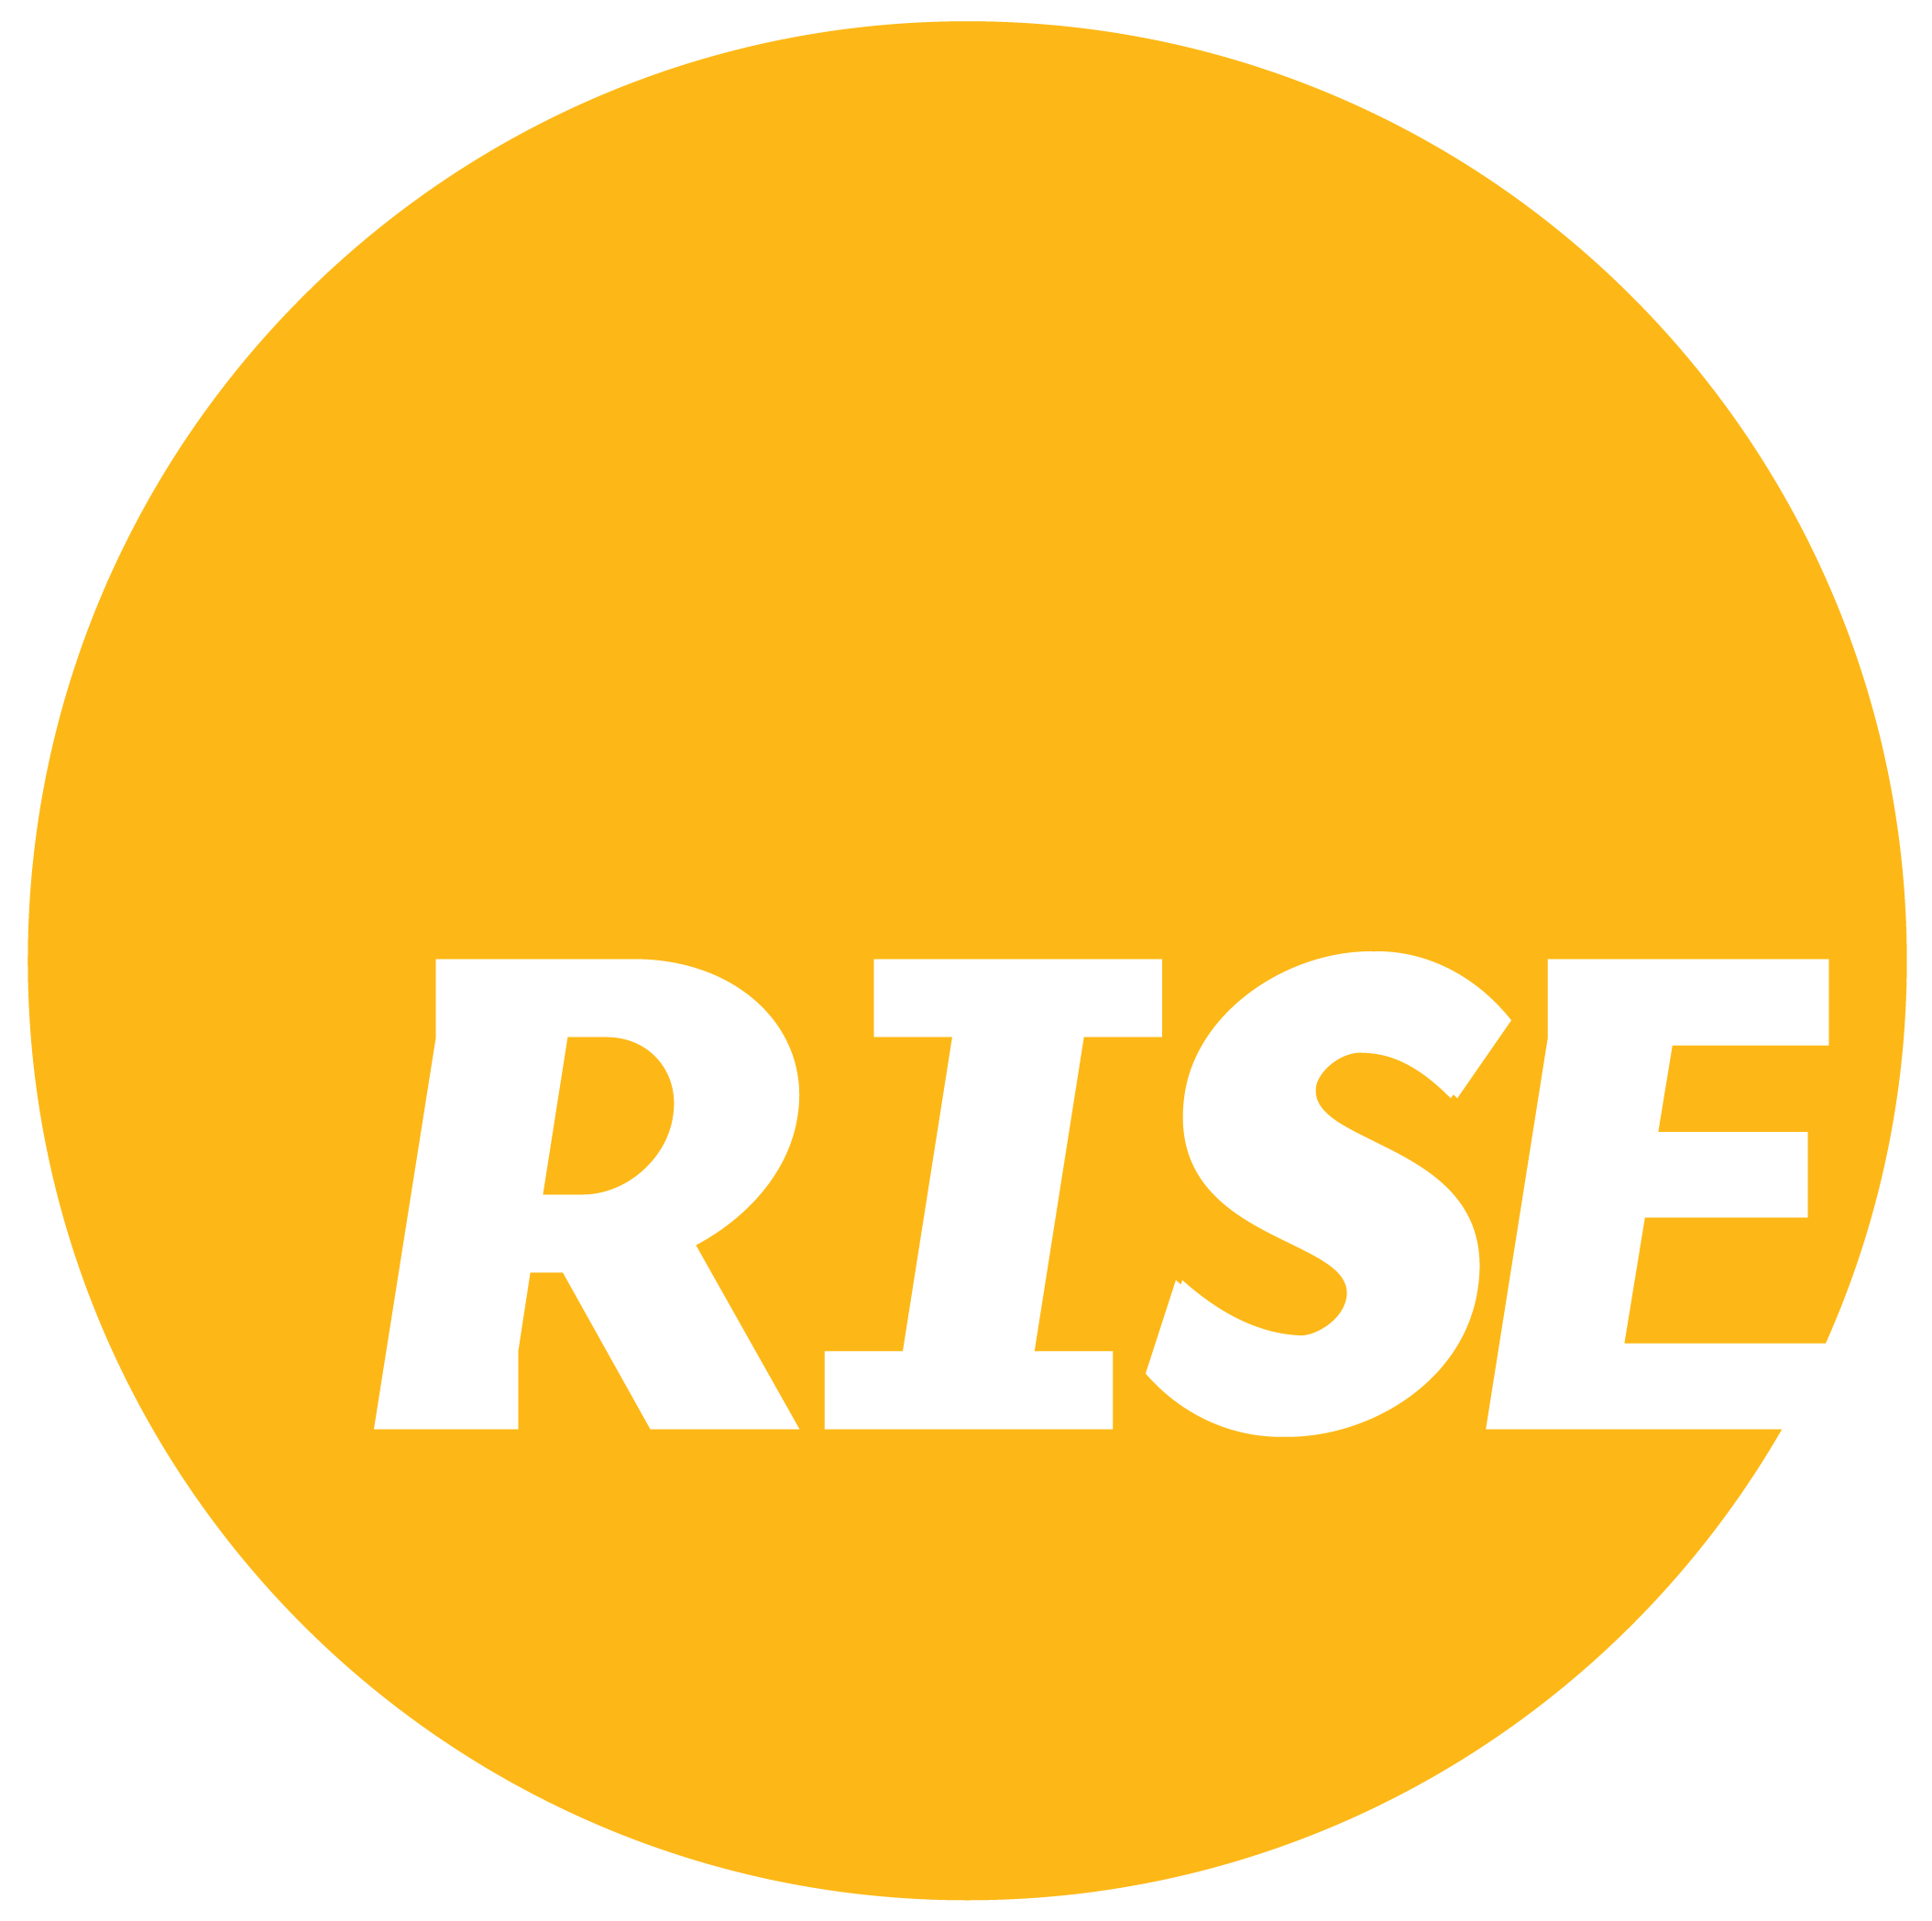 Rise Indonesia